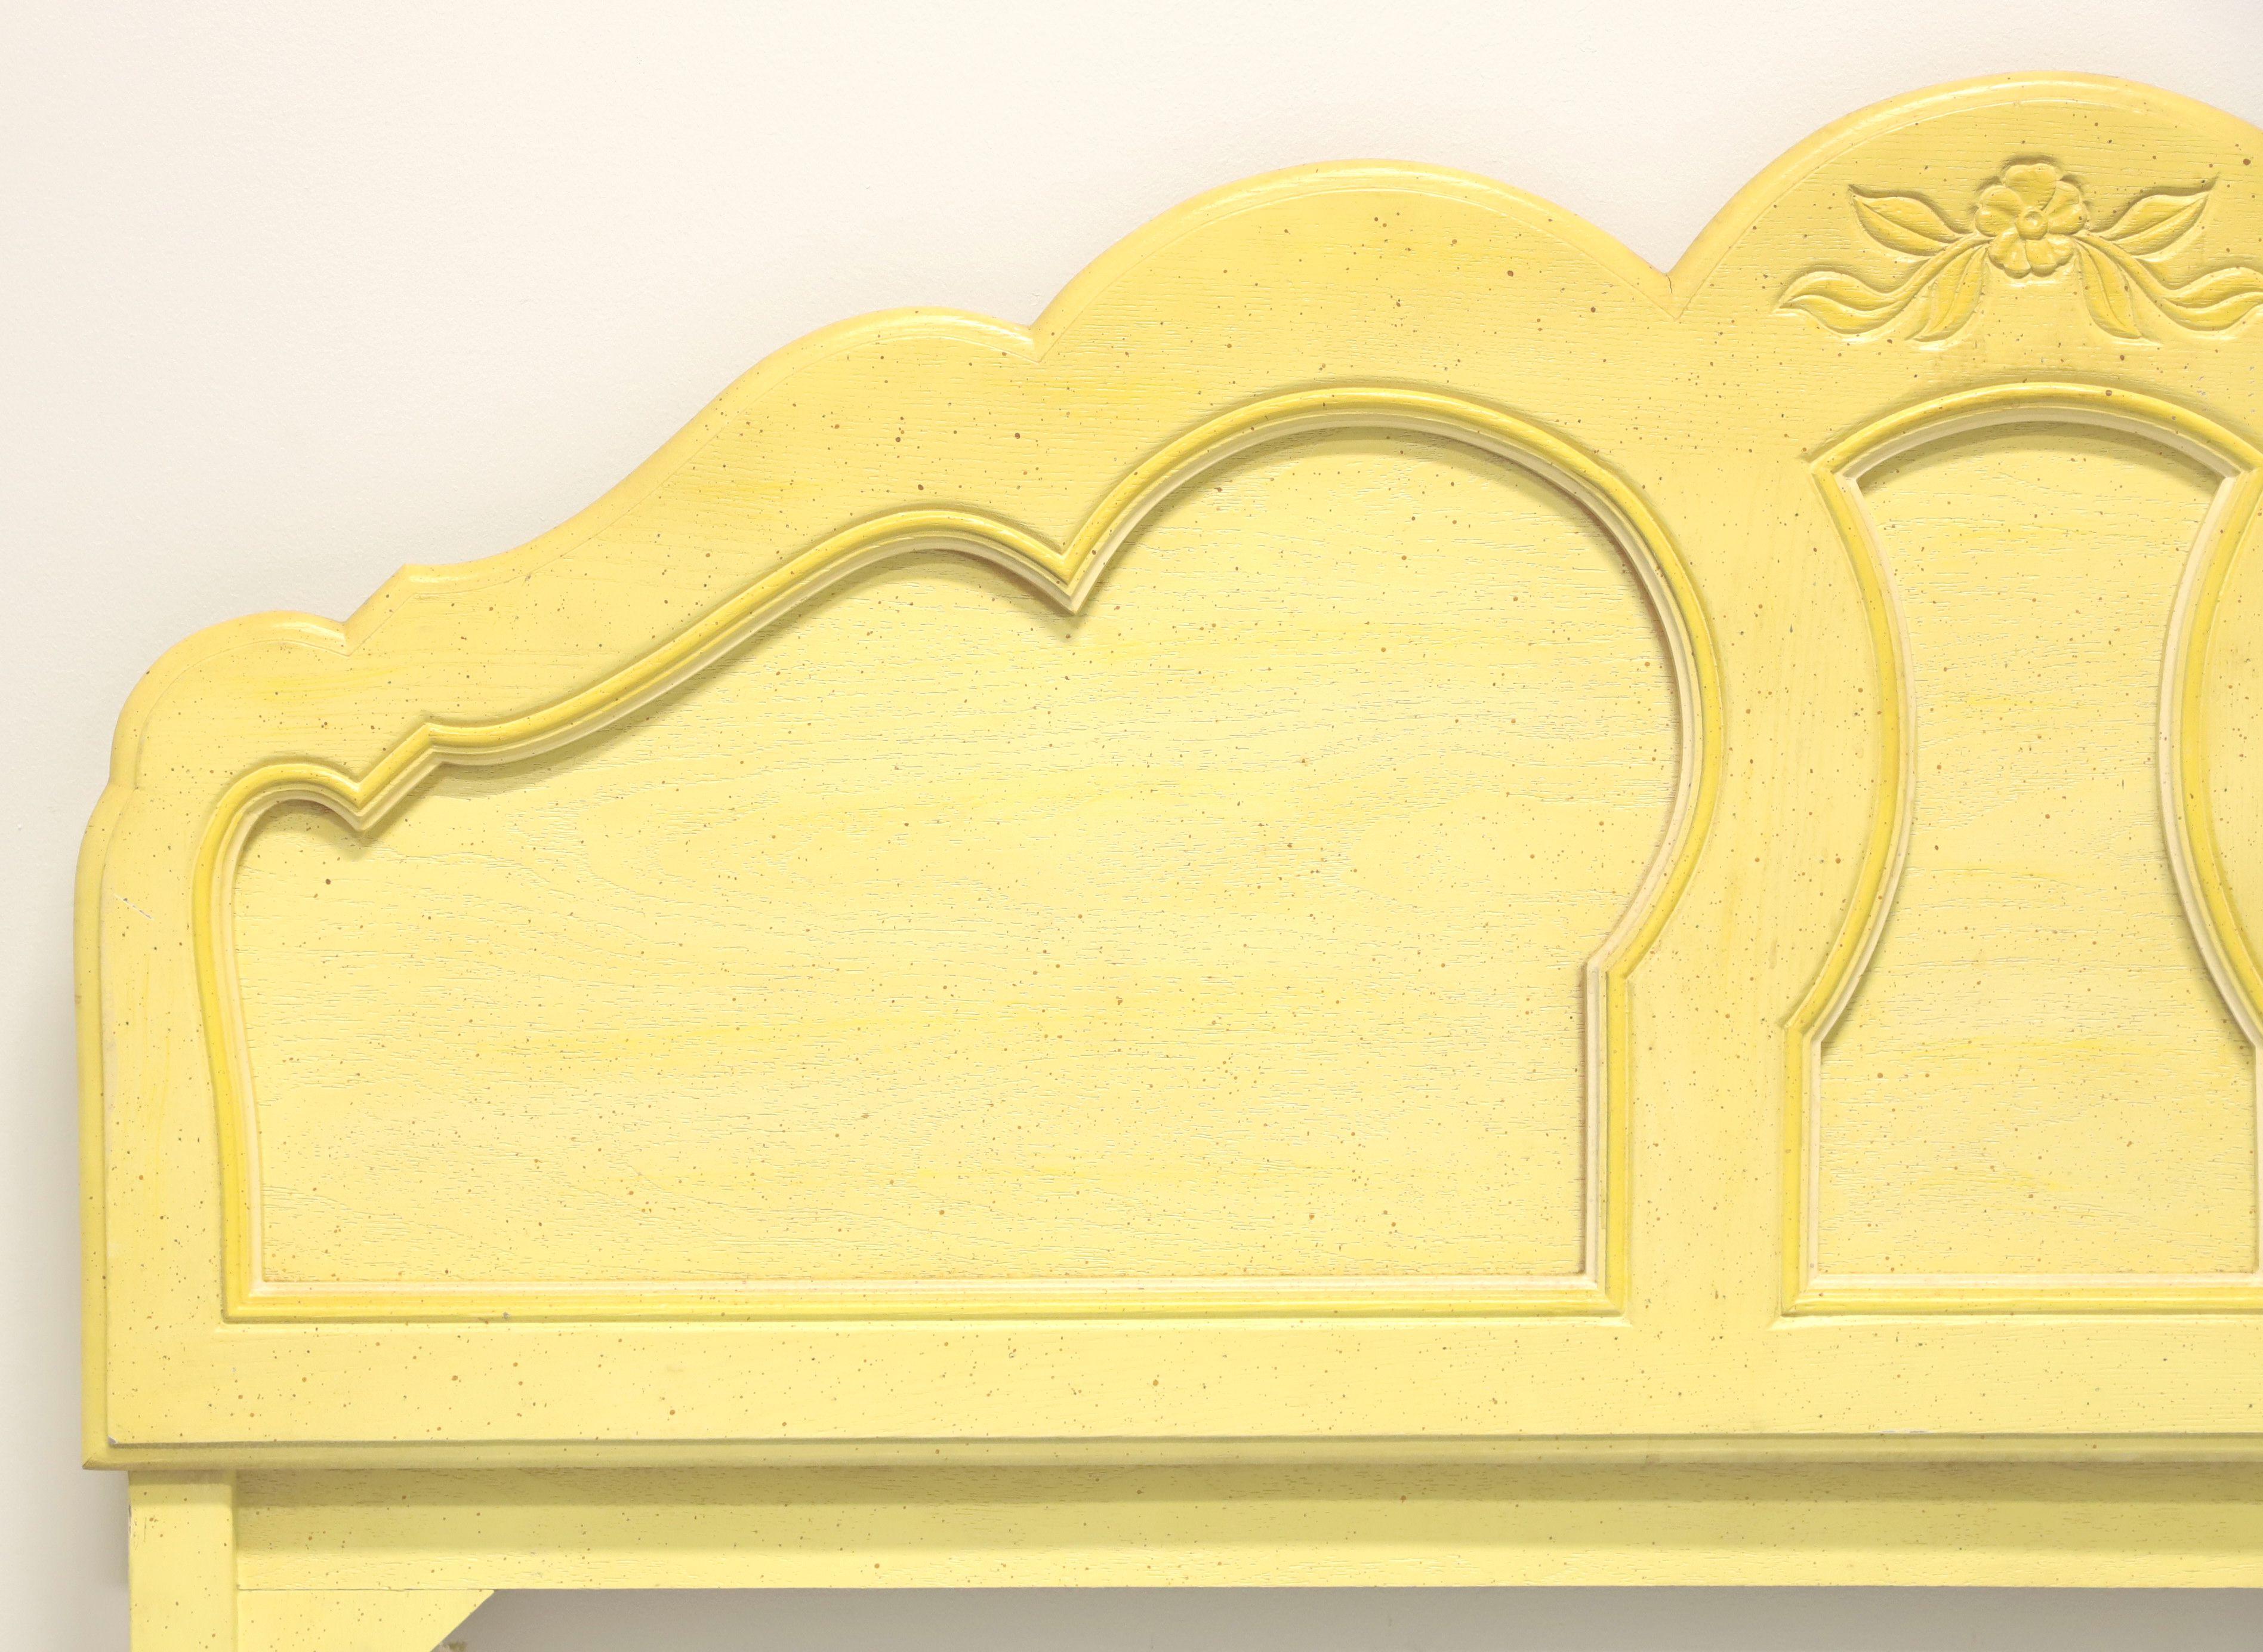 Une tête de lit complète de style campagne française, sans marque. Bois dur massif avec finition peinte en jaune. Le haut de l'arche est festonné, les sculptures sont décoratives et une fleur est sculptée au centre de l'arche. Fabriqué aux